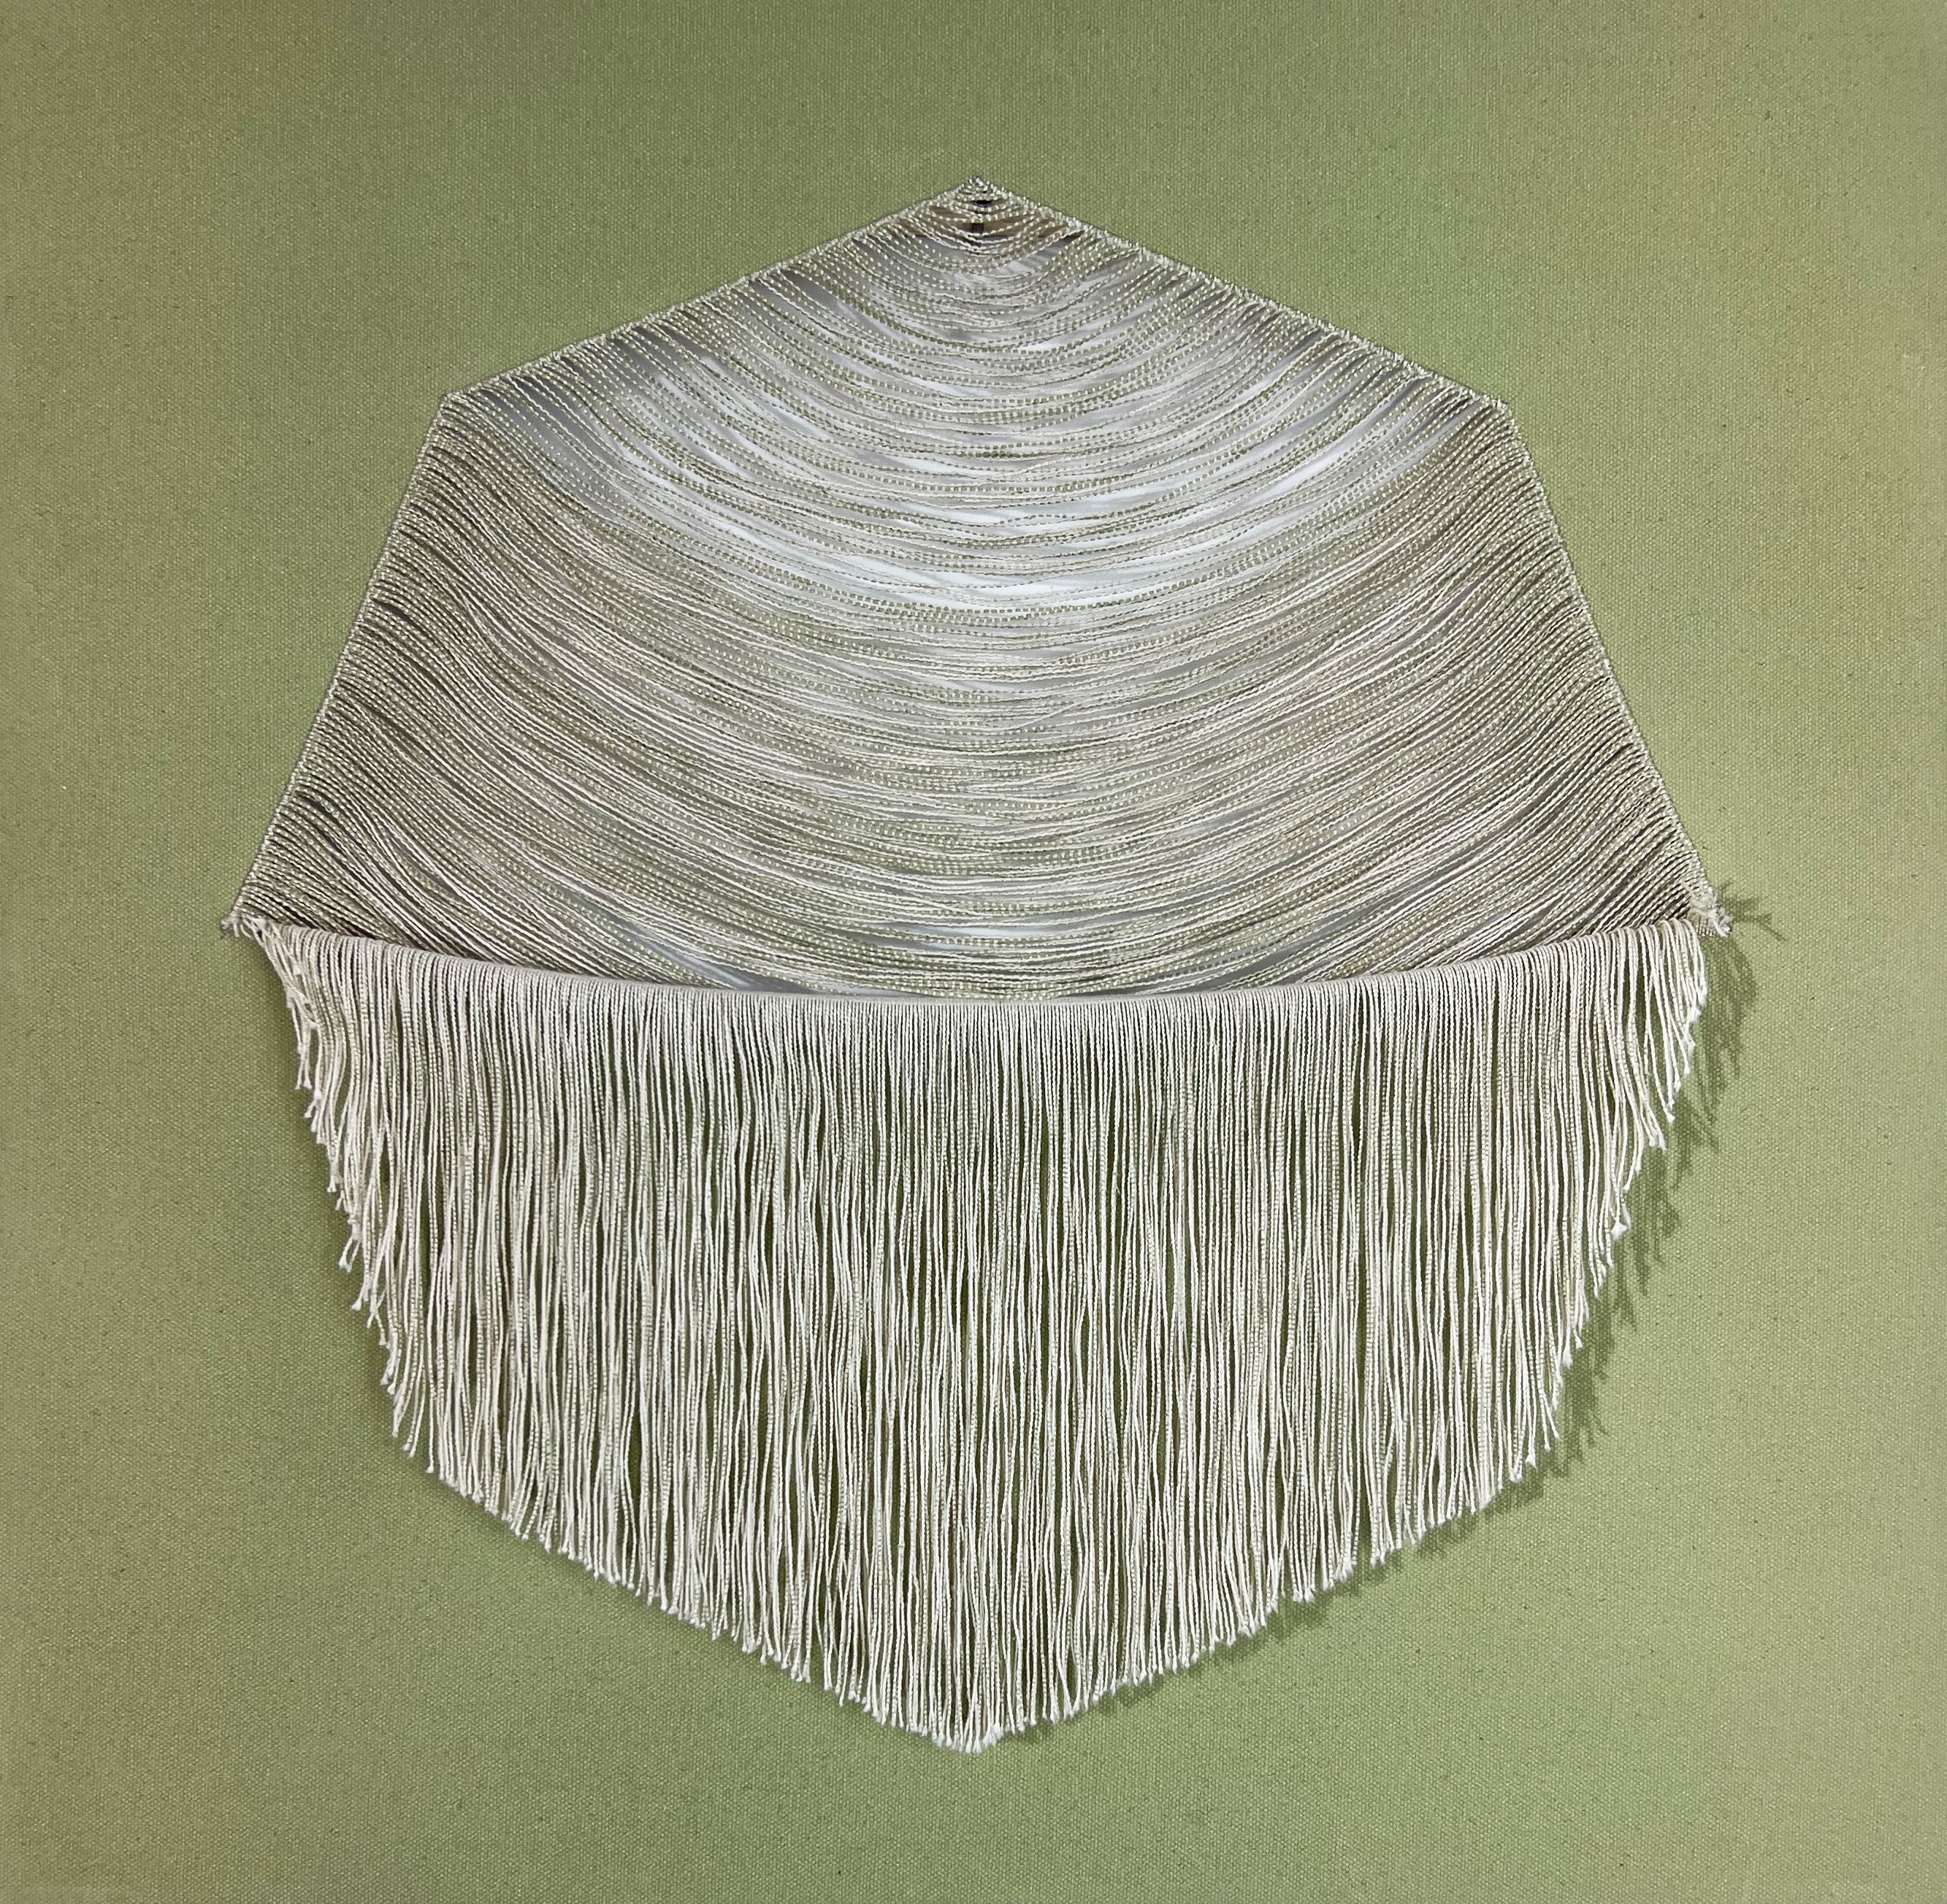 'TEXTURED HARMONY (NO.5)' - Acrylic on Canvas